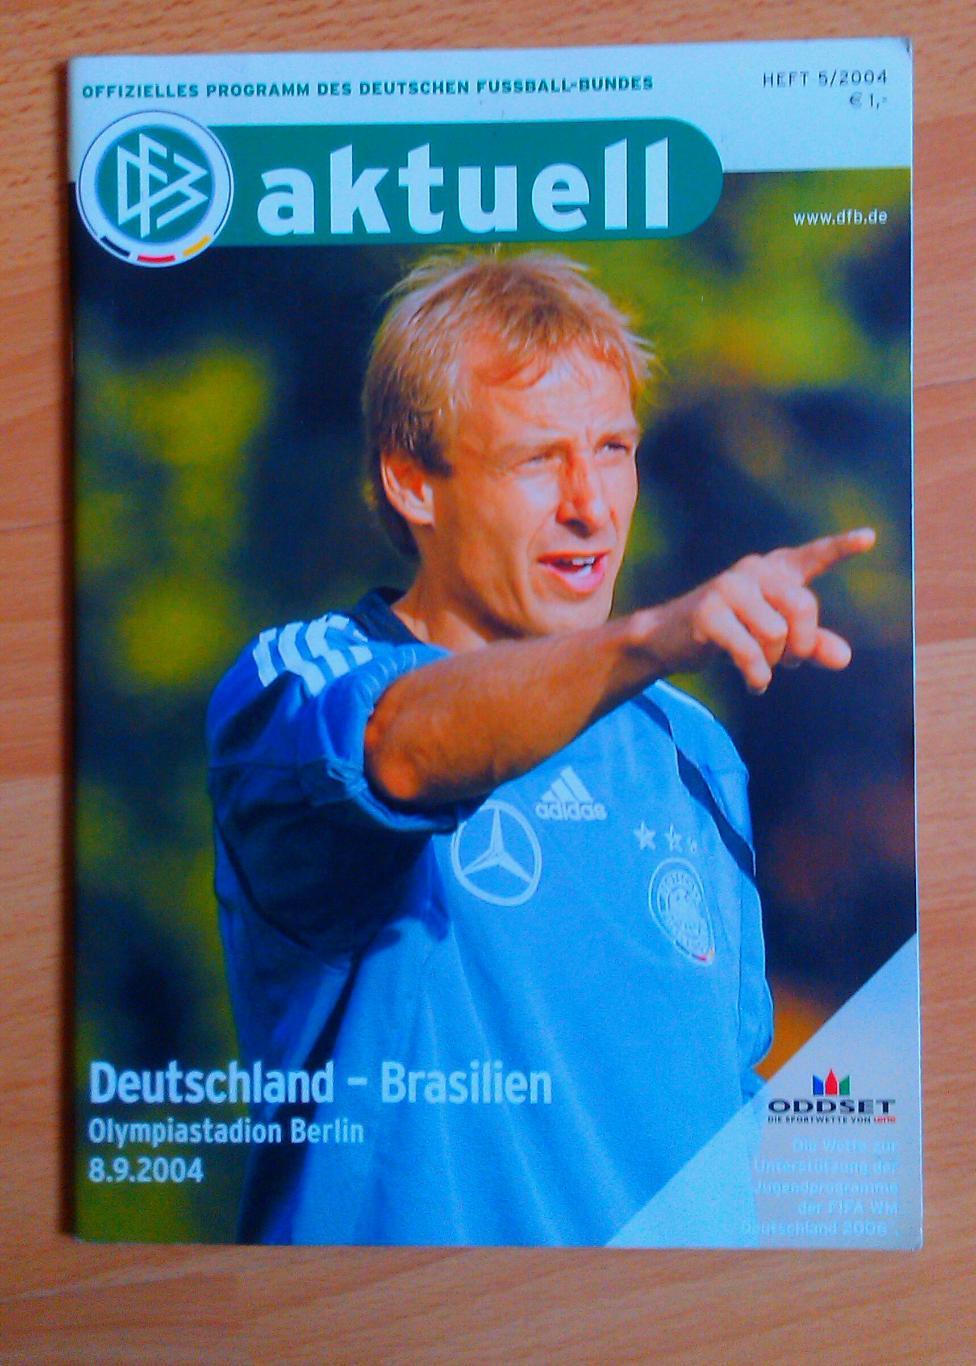 Германия - Бразилия 08.09.2004 товарищеская игра